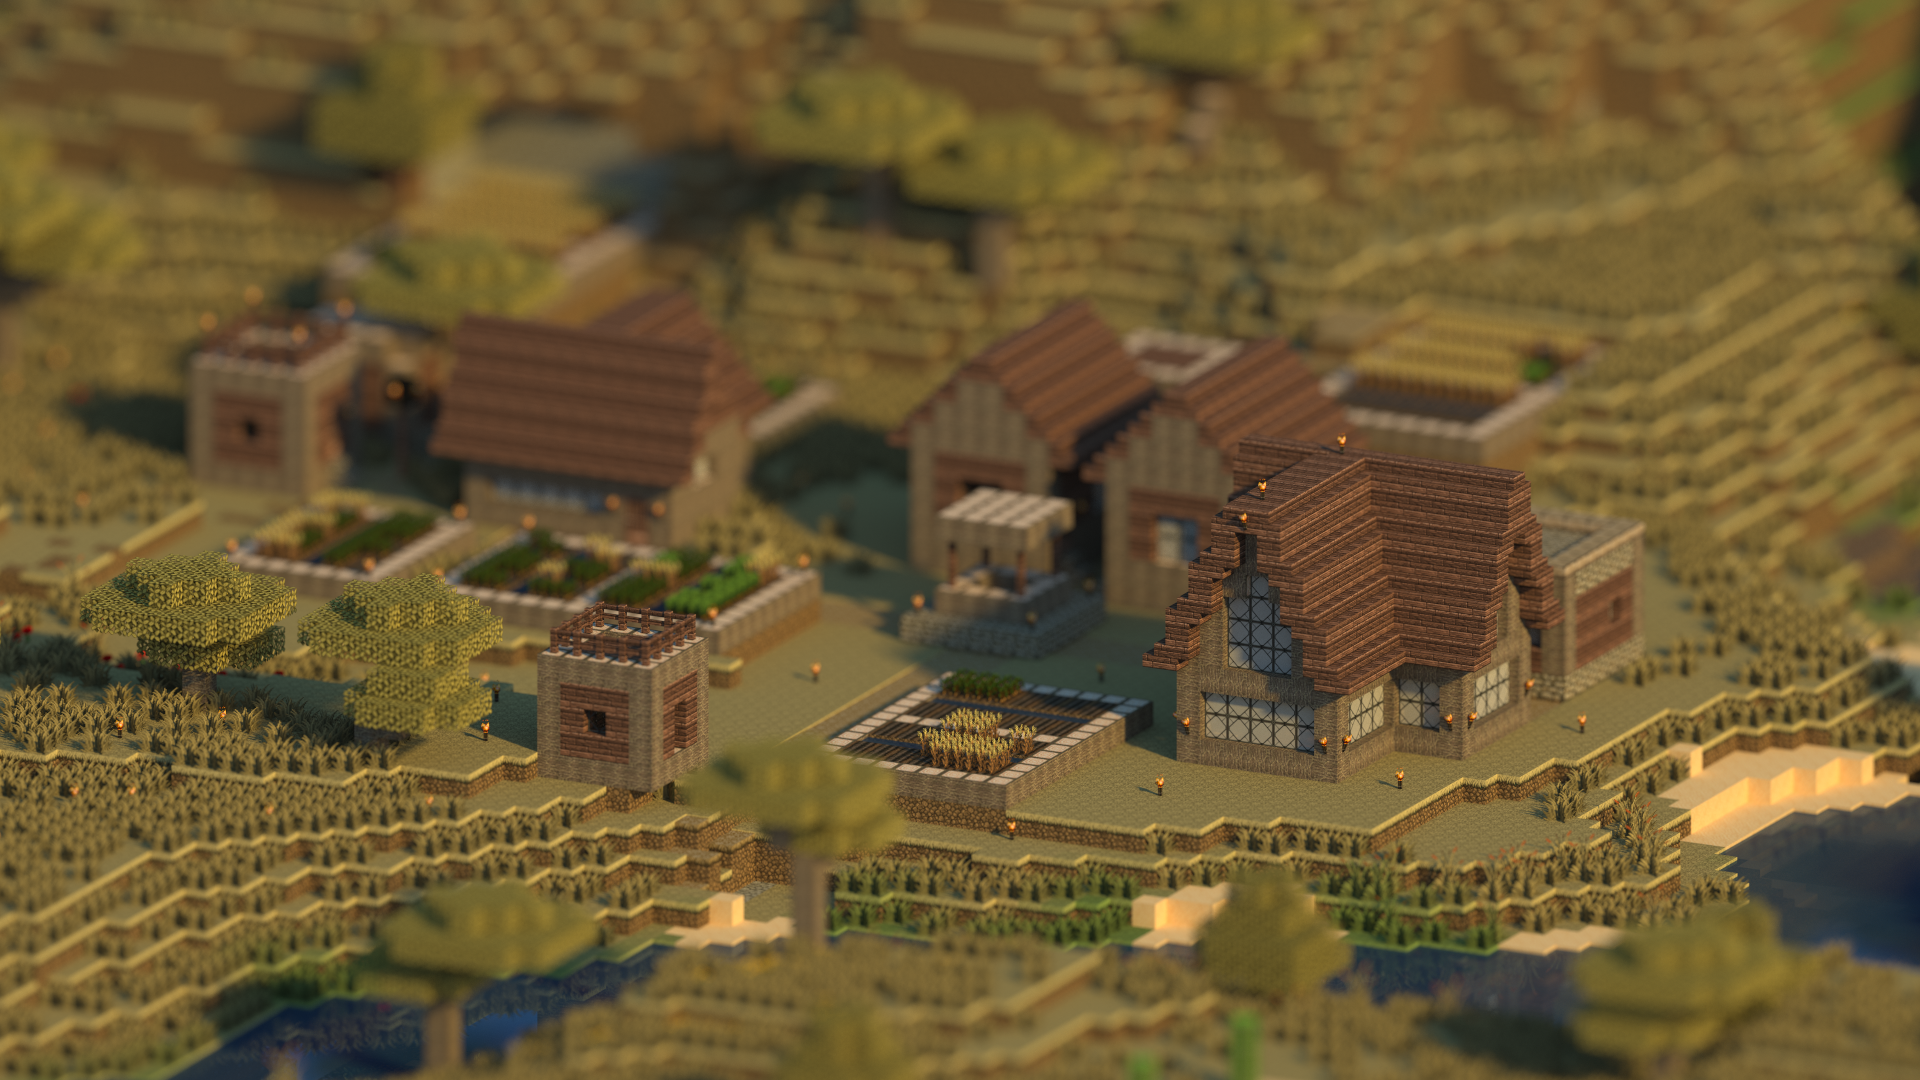 Minicraft village